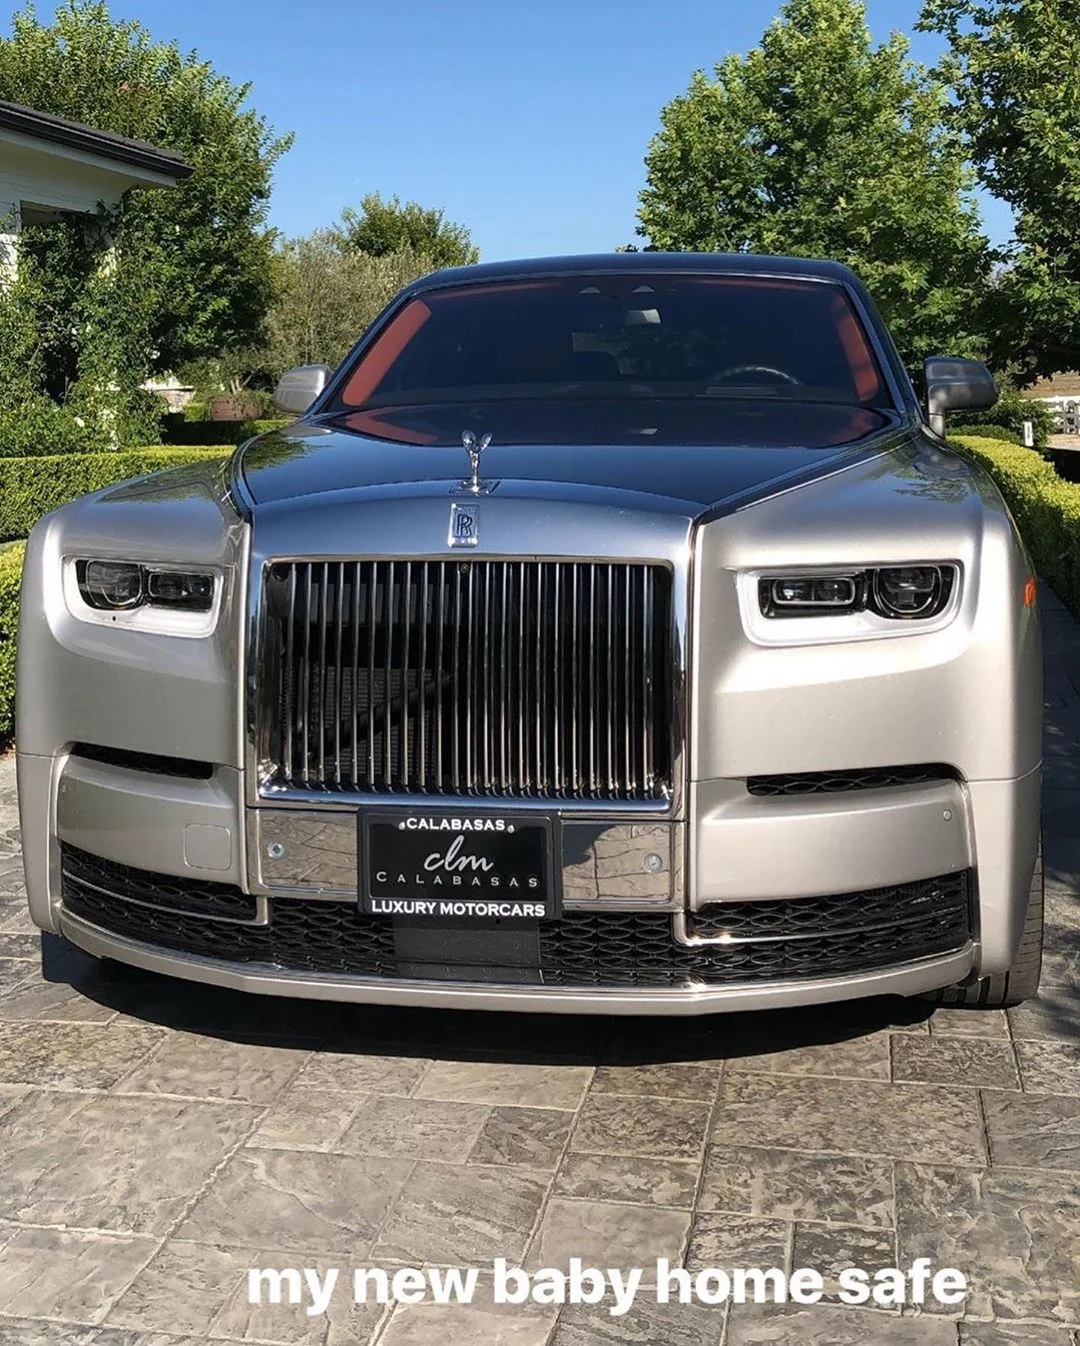 Кайлі Дженнер показала своє розкішне авто за 450 тисяч доларів - фото 440484